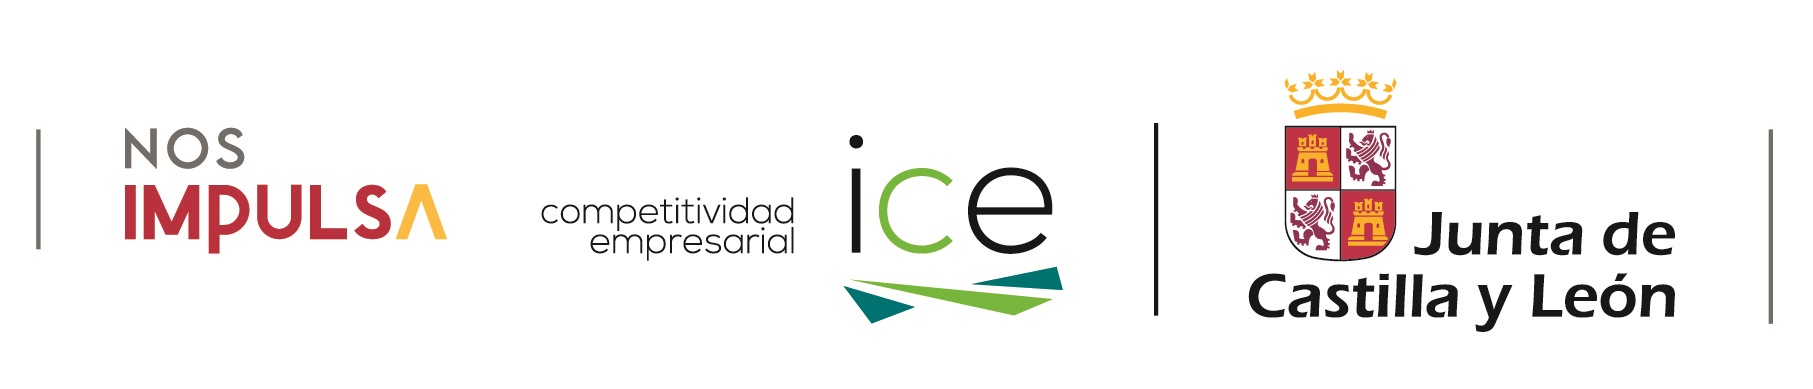 Nos impulsa, Competitividad empresarial ICE, Junta de Castilla y León